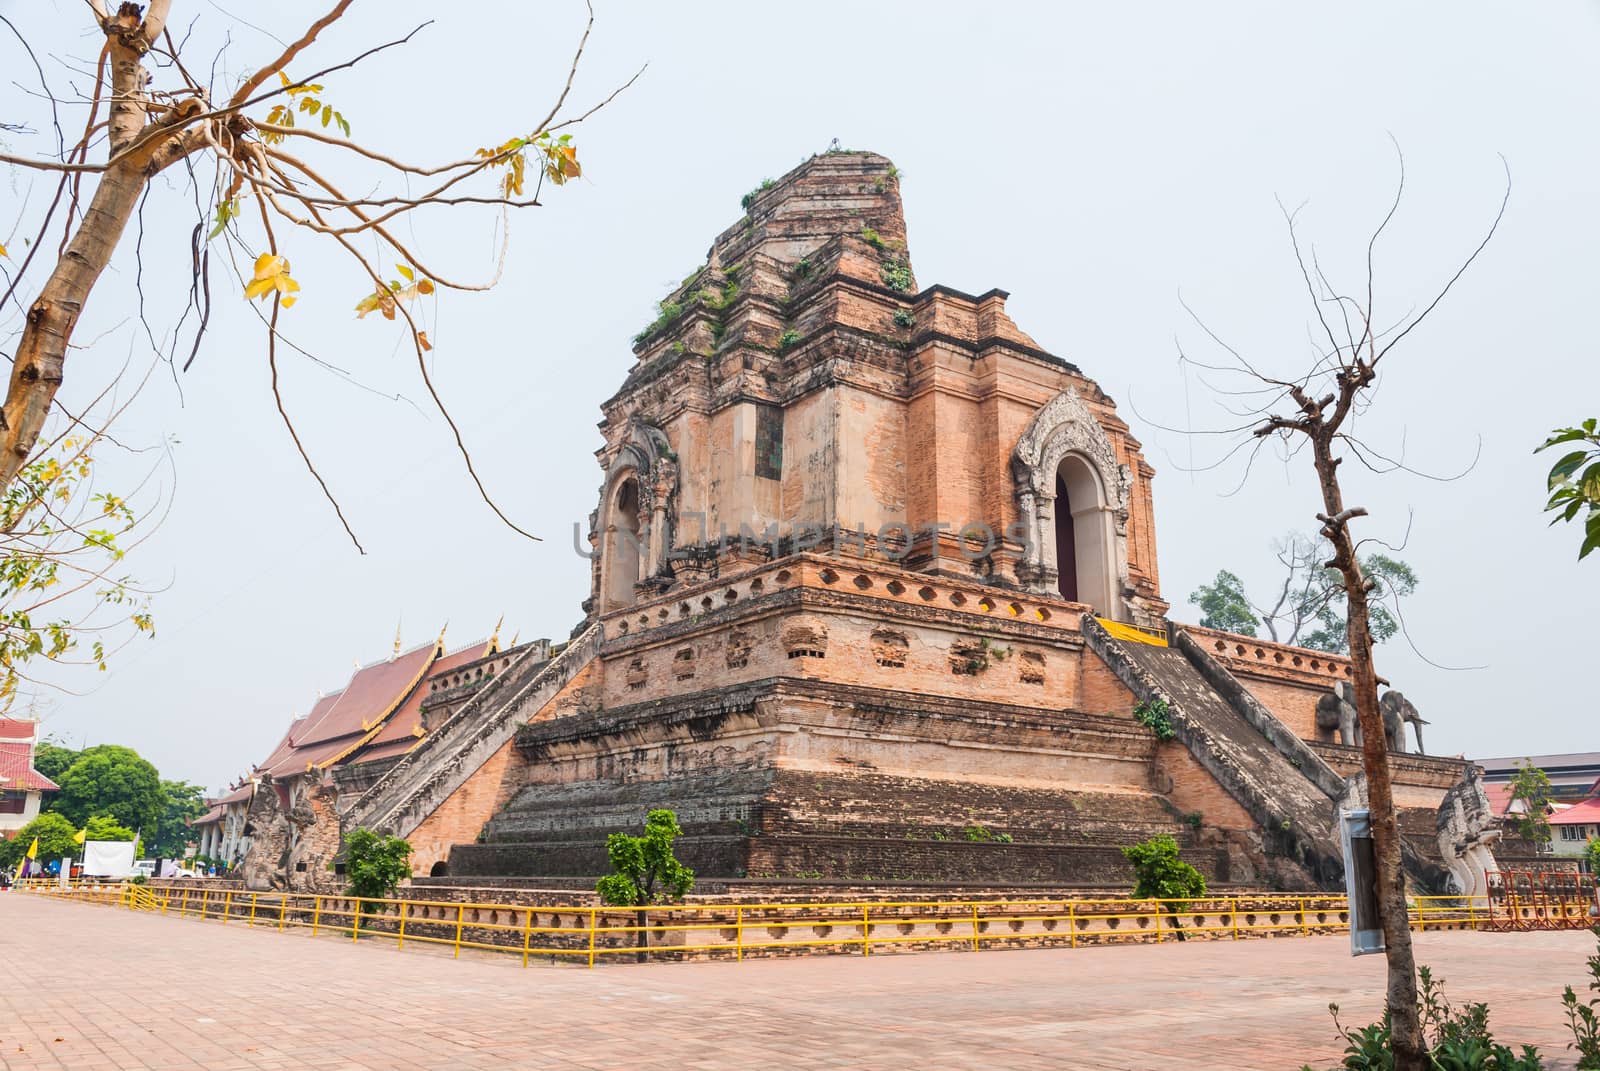 Pagoda of Wat Chedi Luang, Chiang Mai, Thailand.